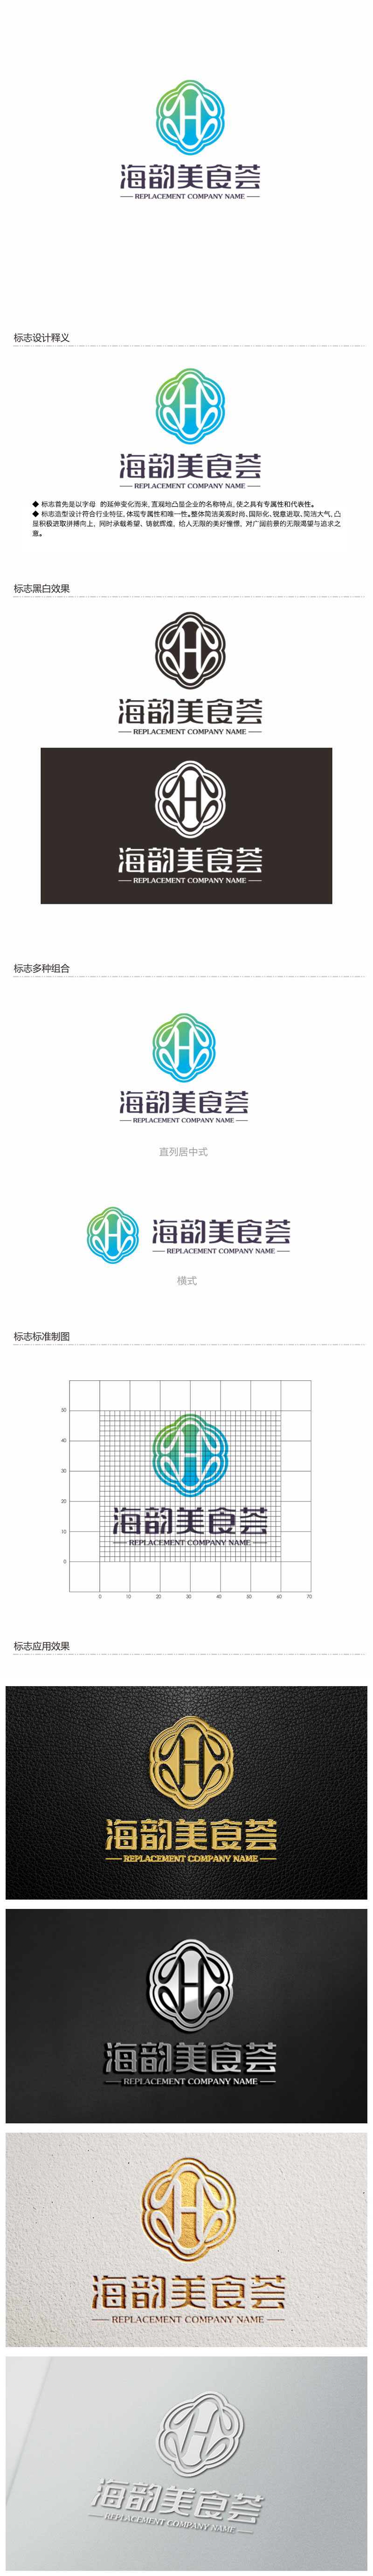 钟炬的海韵美食荟logo设计